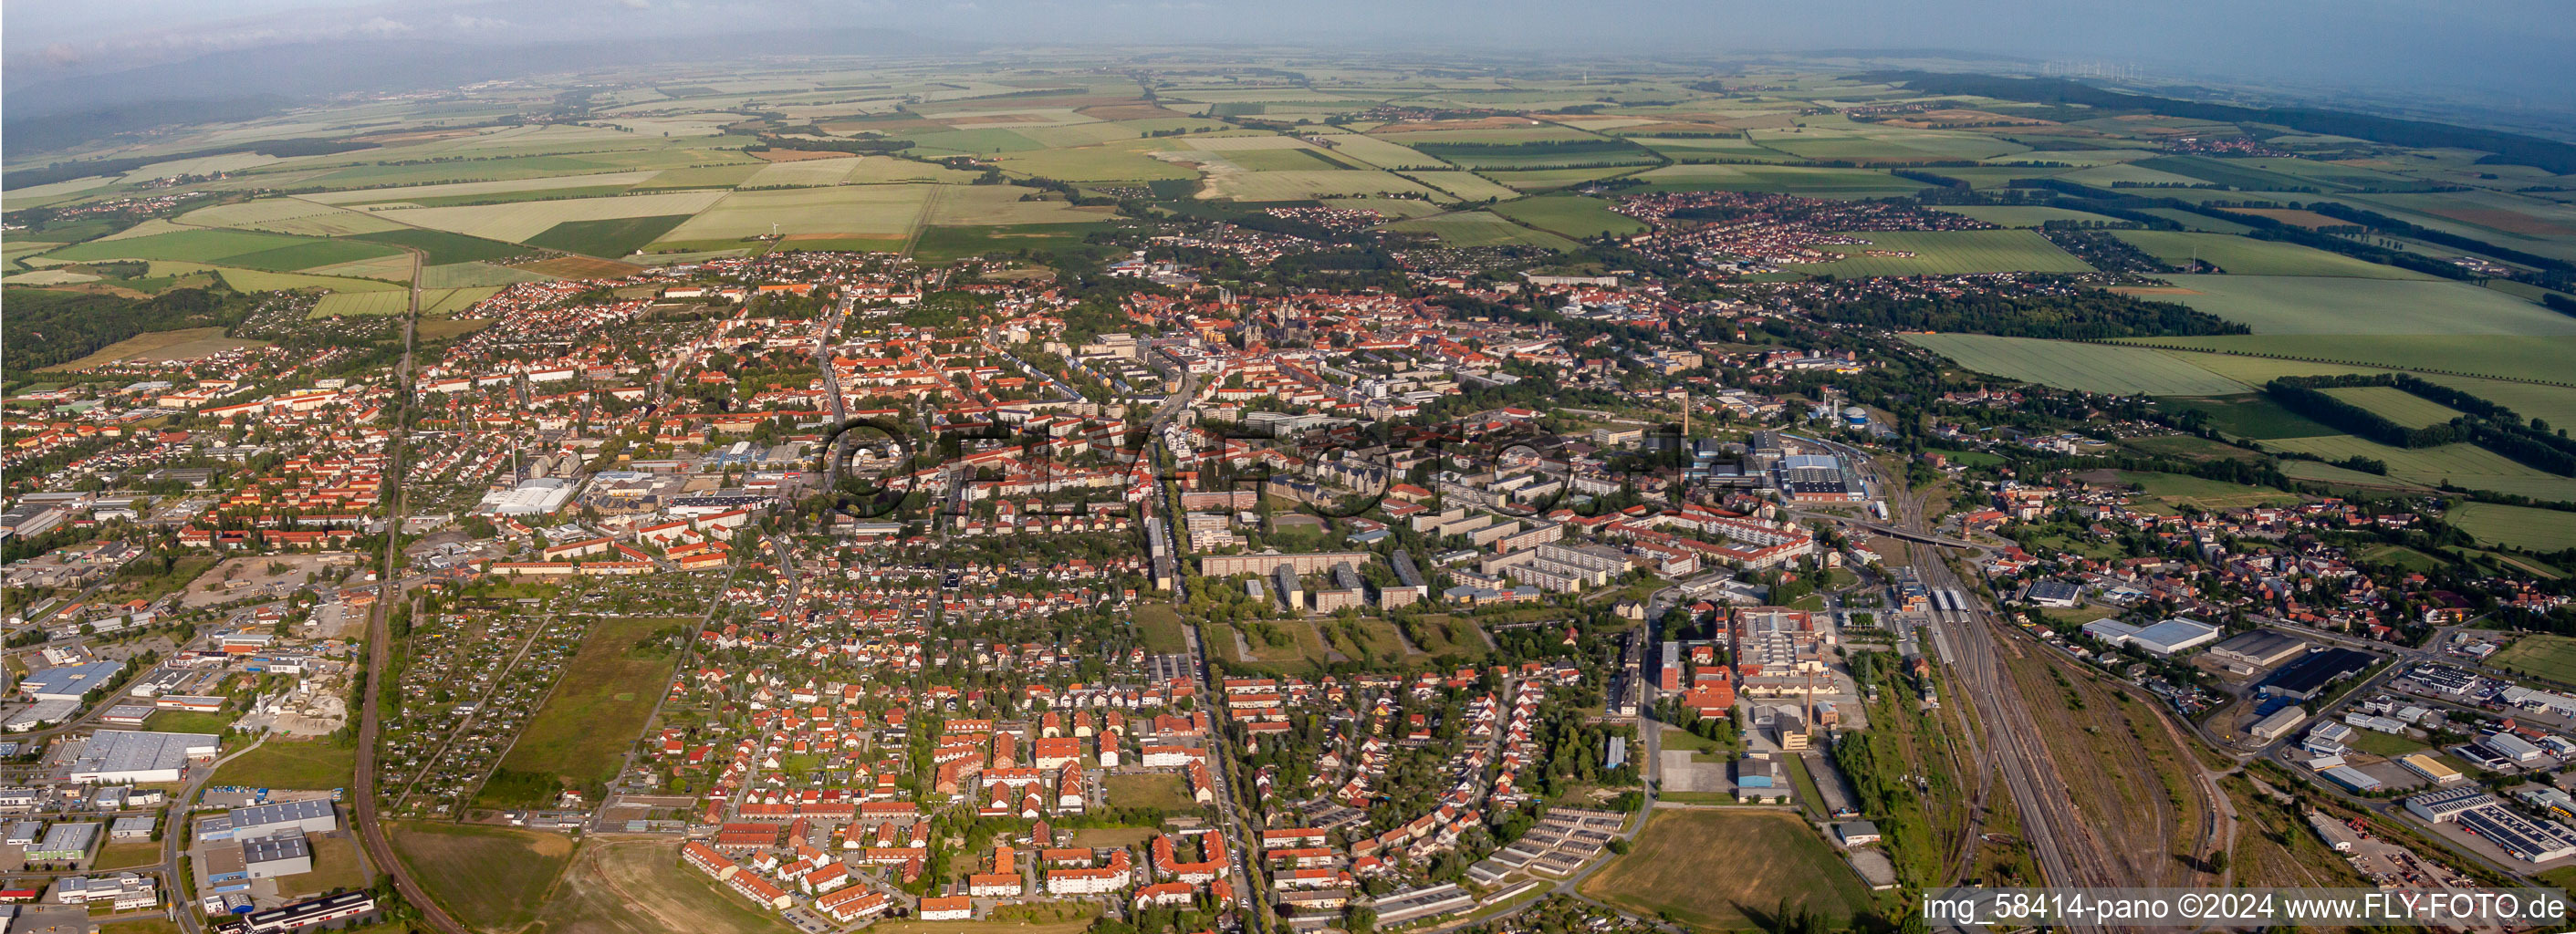 Vue aérienne de Panorama - perspective de la zone urbaine avec la périphérie et le centre-ville à Halberstadt dans le département Saxe-Anhalt, Allemagne